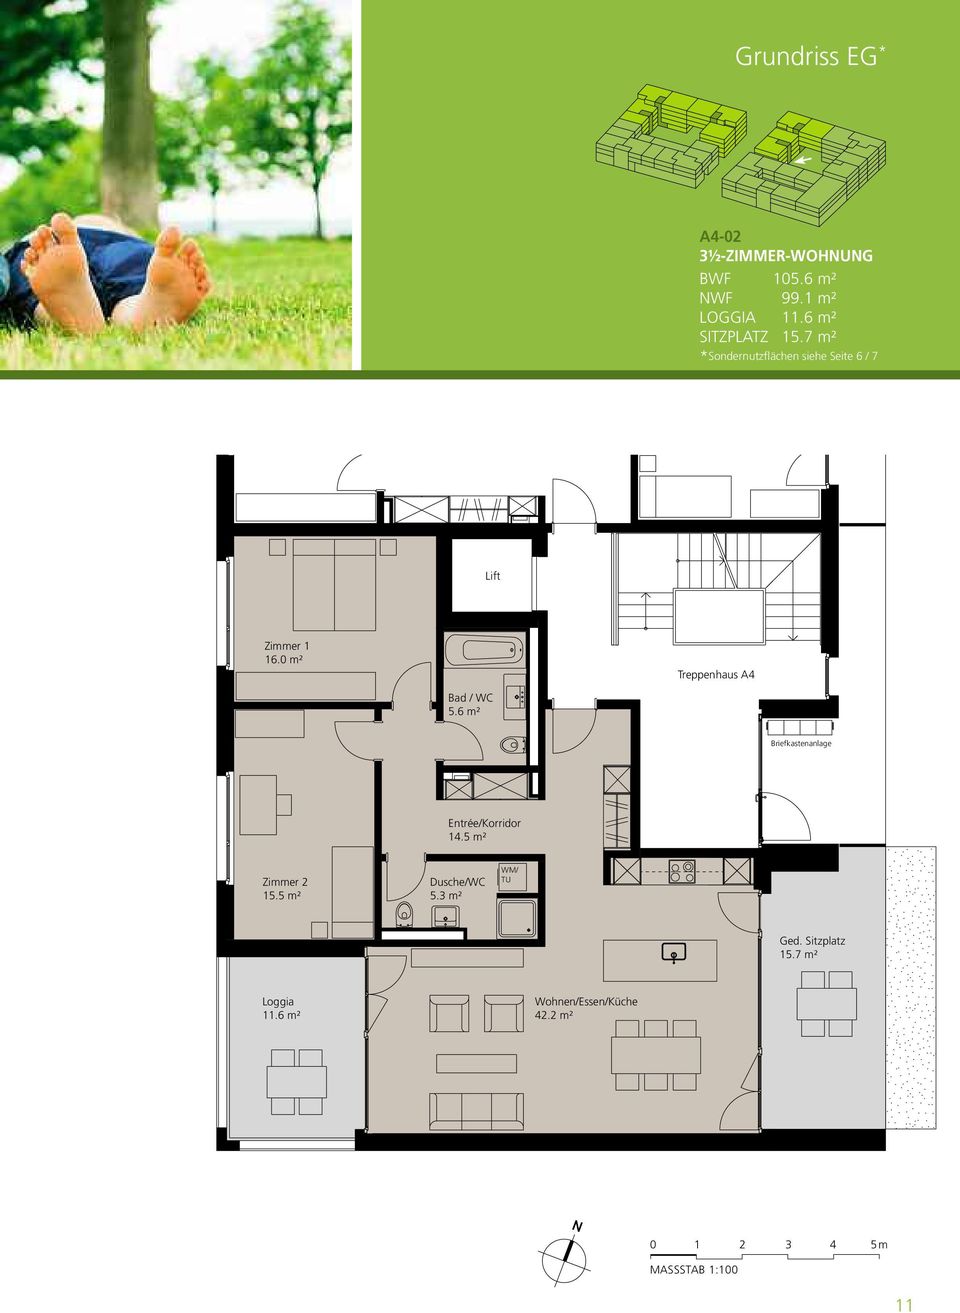 0 m² Treppenhaus A4 Bad /WC 5.6 m² Briefkastenanlage Entrée/Korridor 14.5 m² Zimmer 2 15.